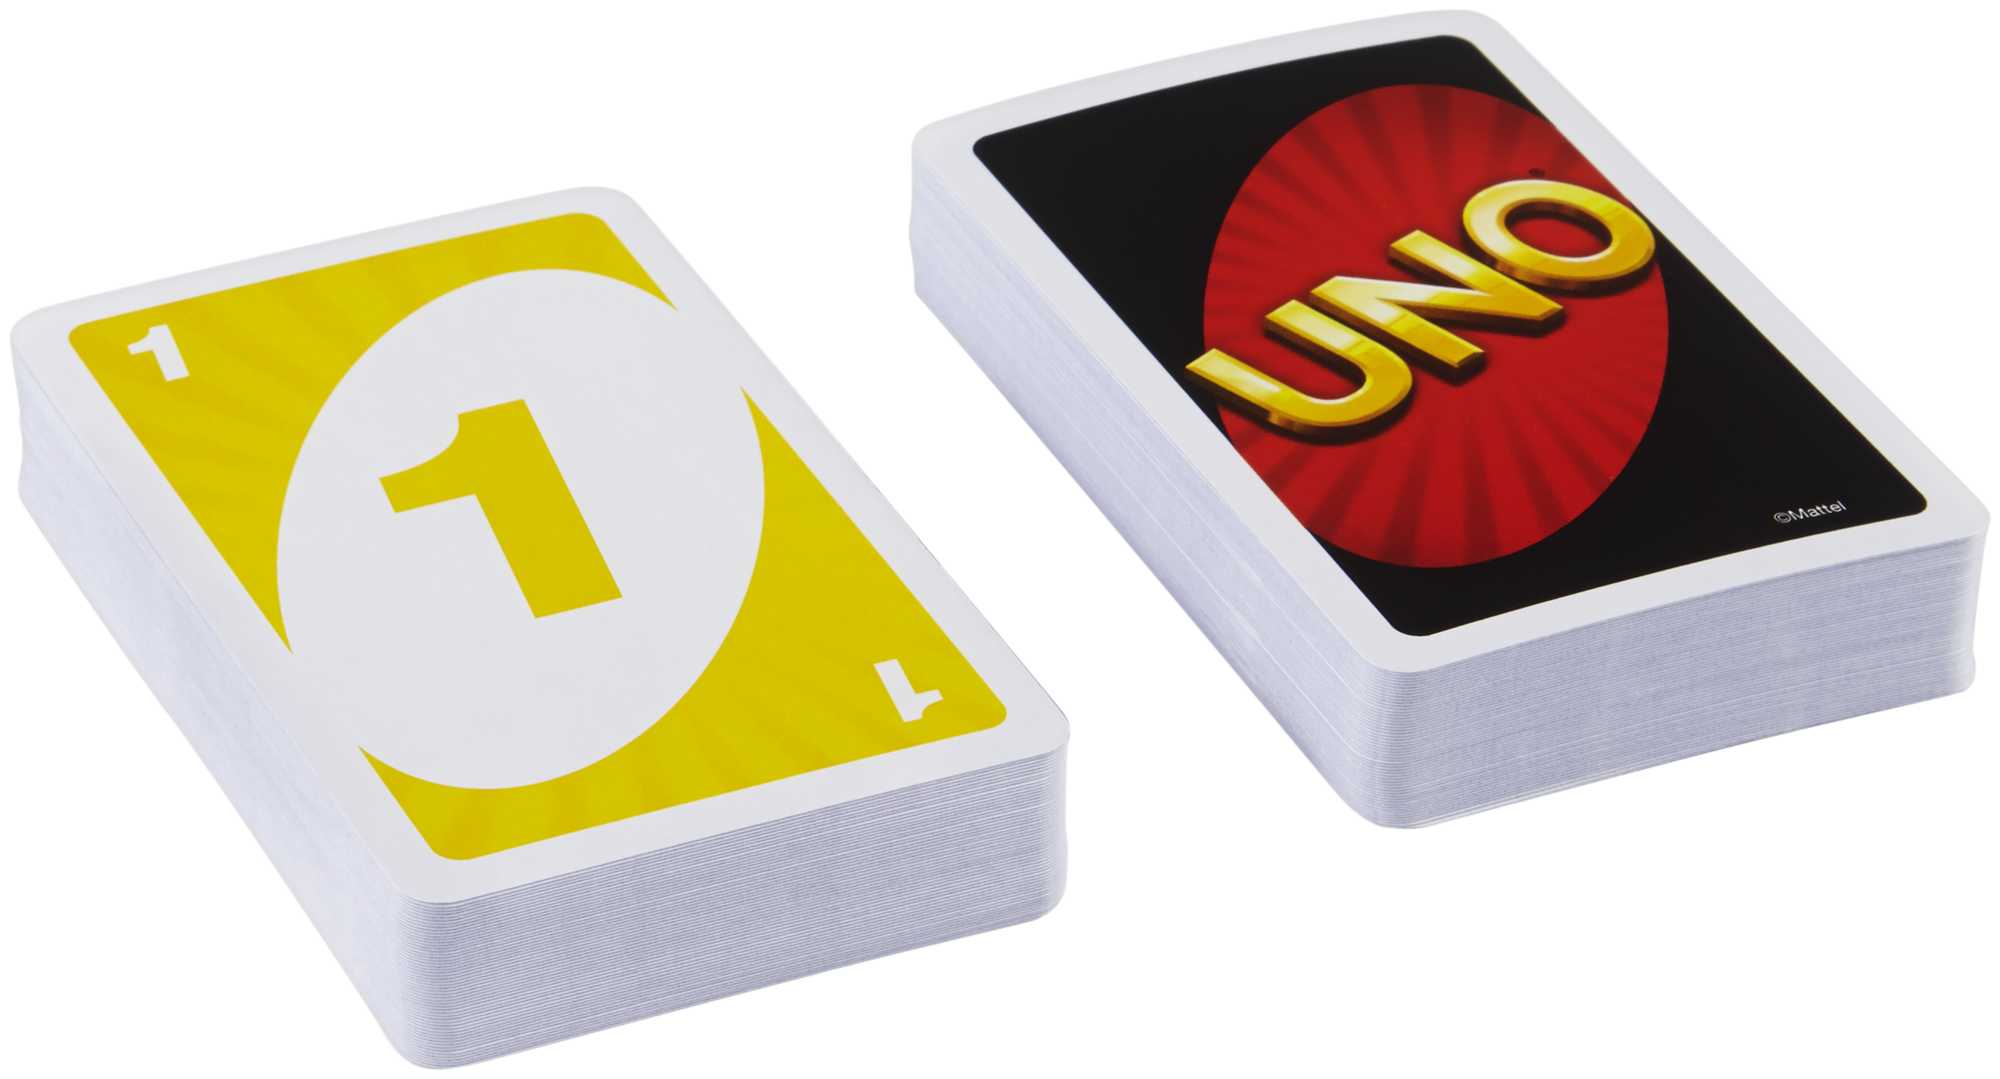 UNO Mattel - Un, jeu de cartes W2087, 42003 - Version Anglaise